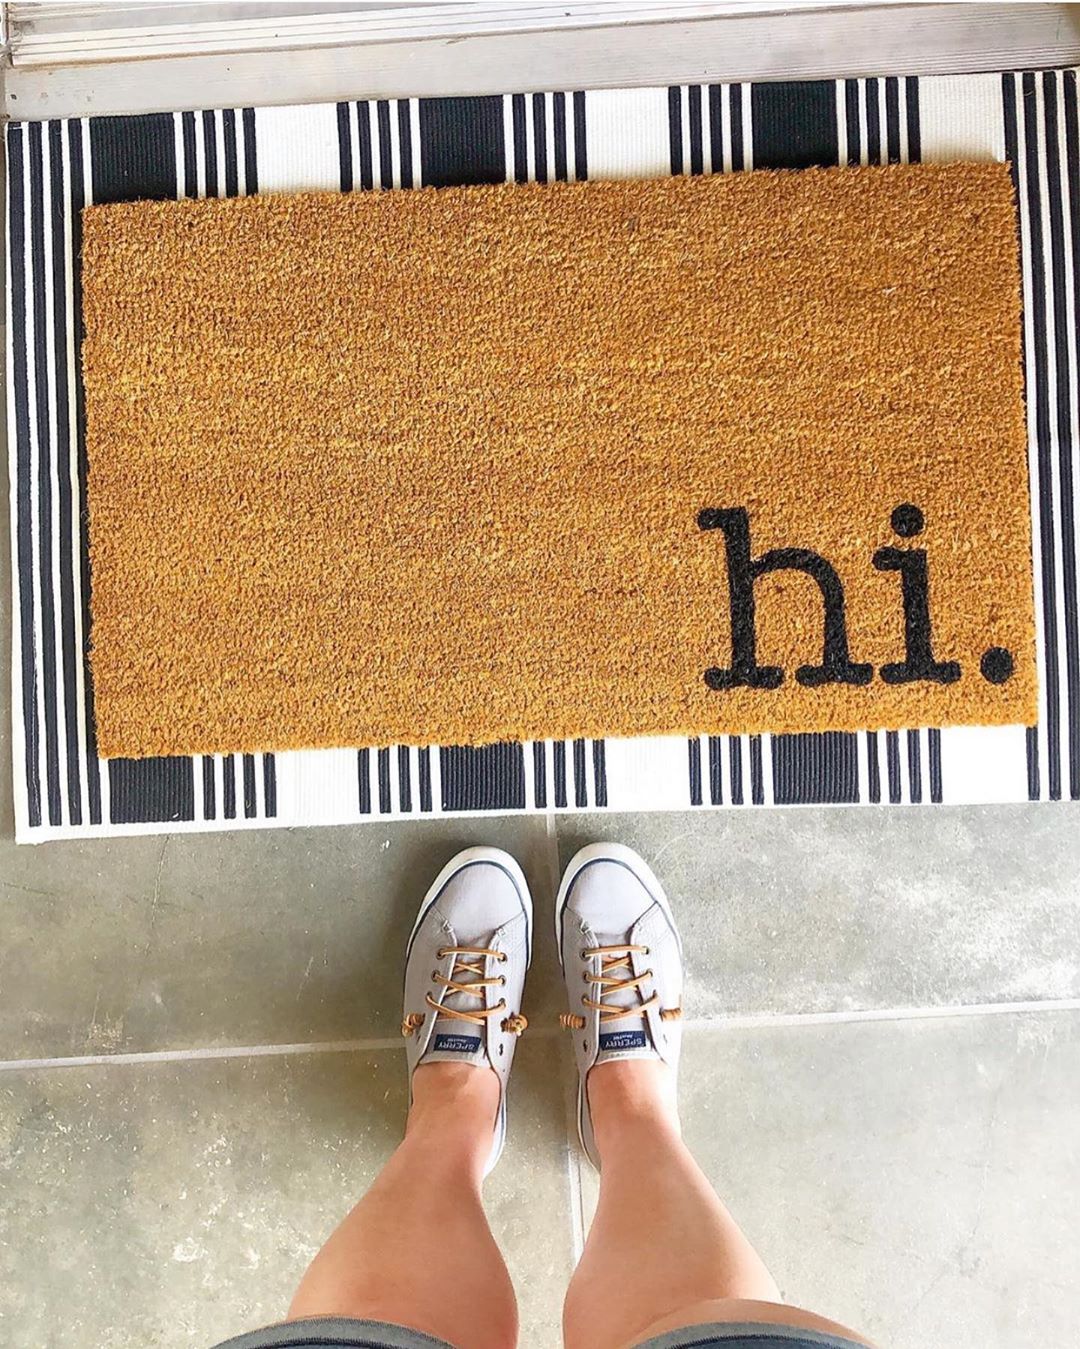 Woman standing before "hi" welcome door mat. Photo by Instagram user @blackandwheatco